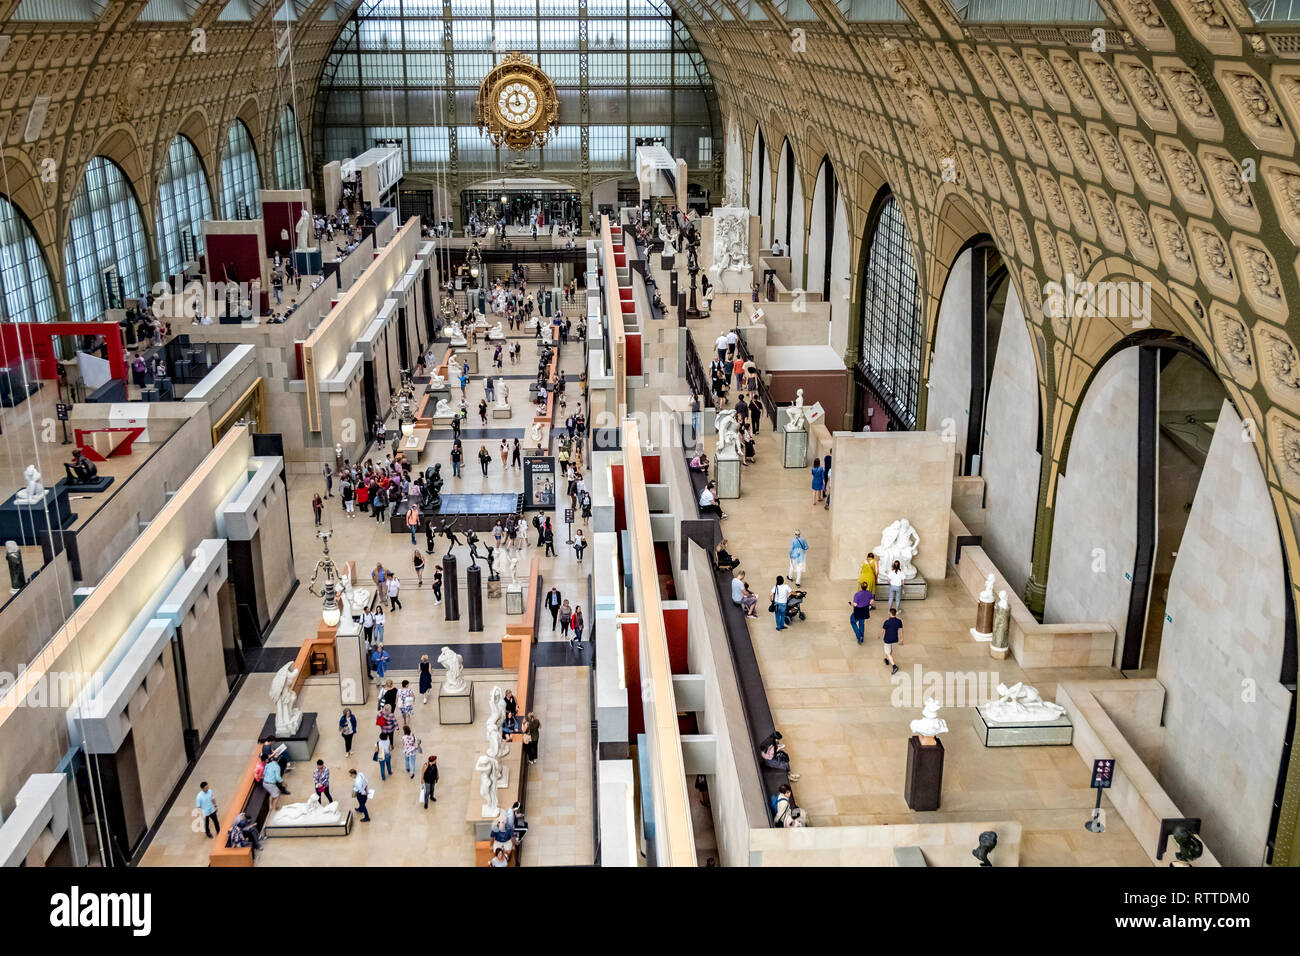 Musée d'Orsay , das Museumsgebäude war ursprünglich ein Bahnhof, Gare d'Orsay, und beherbergt heute eine Weltklasse-Sammlung von Kunst in Paris, Frankreich Stockfoto